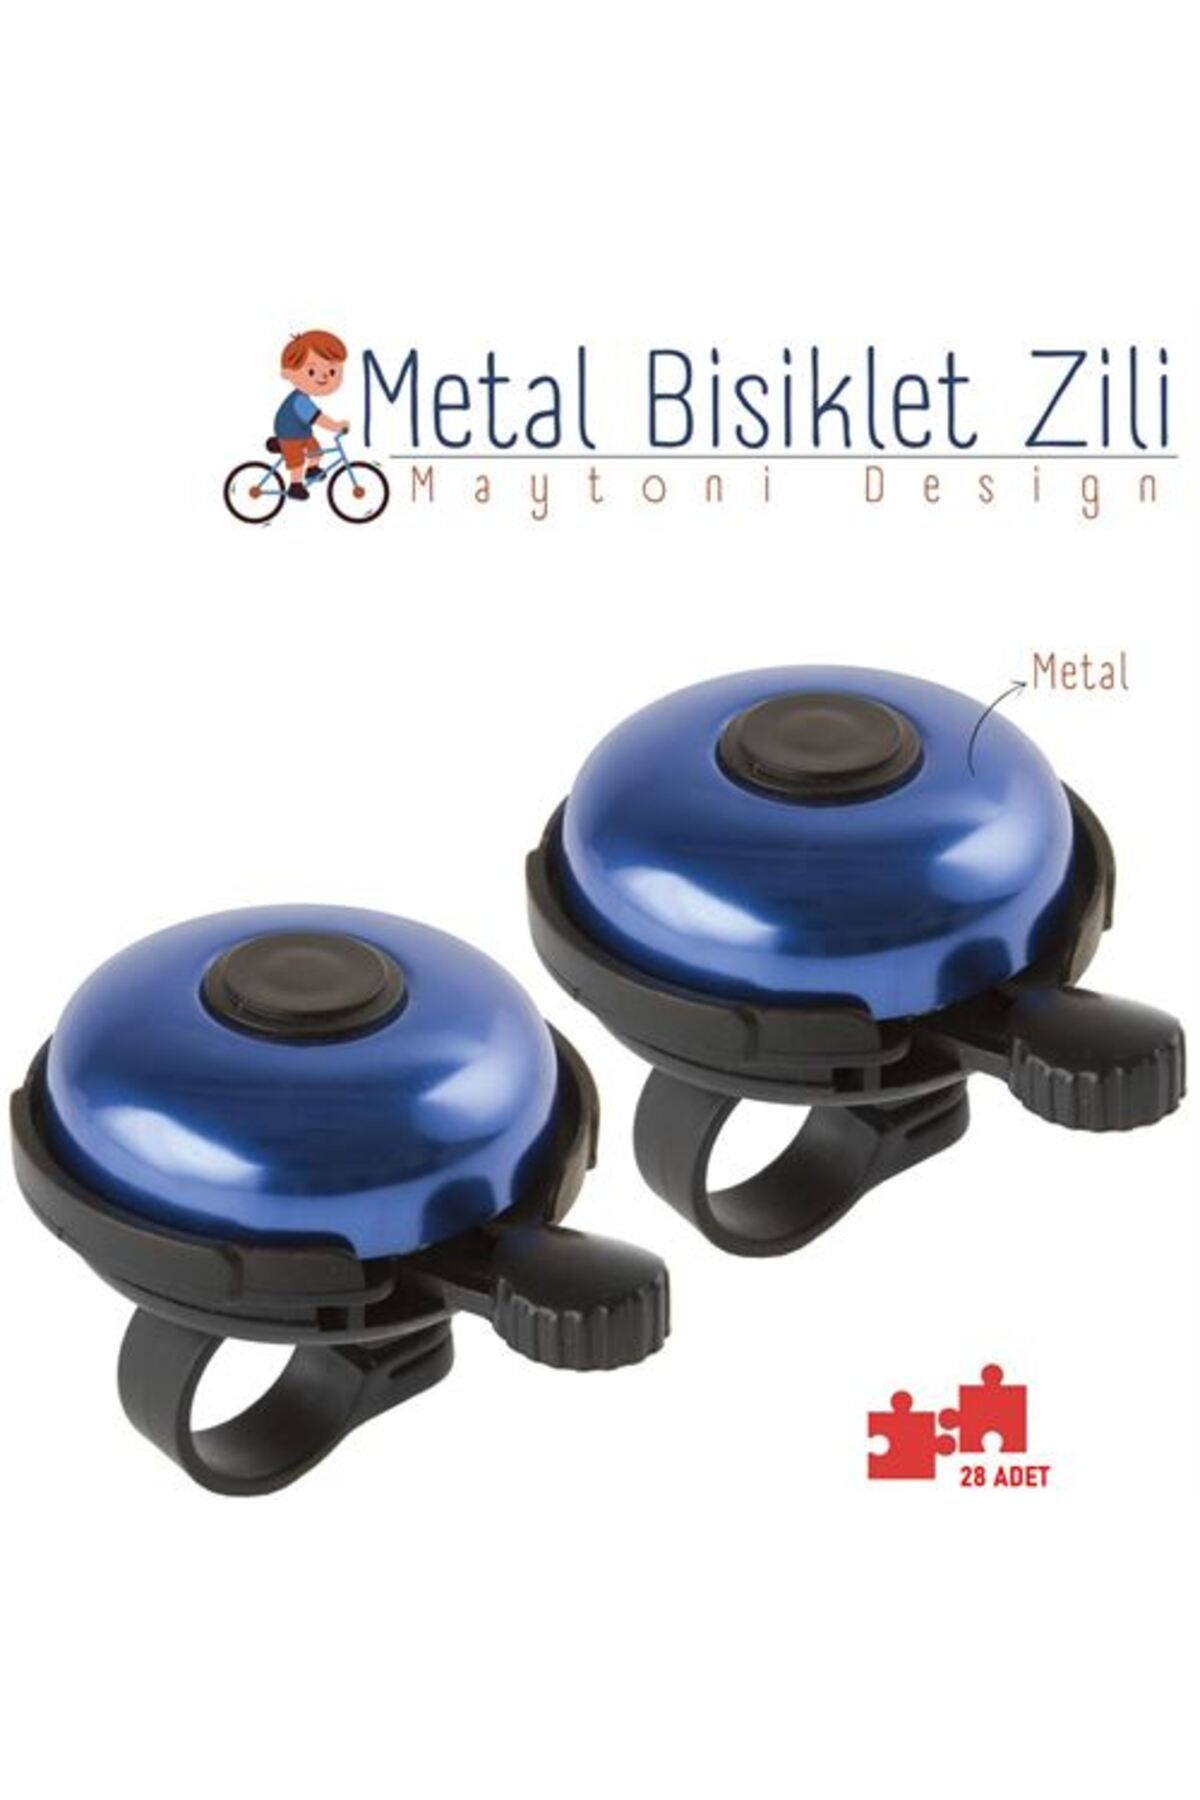 ModaCar Bisiklet Zili 12 ADET Metal Maytoni Design